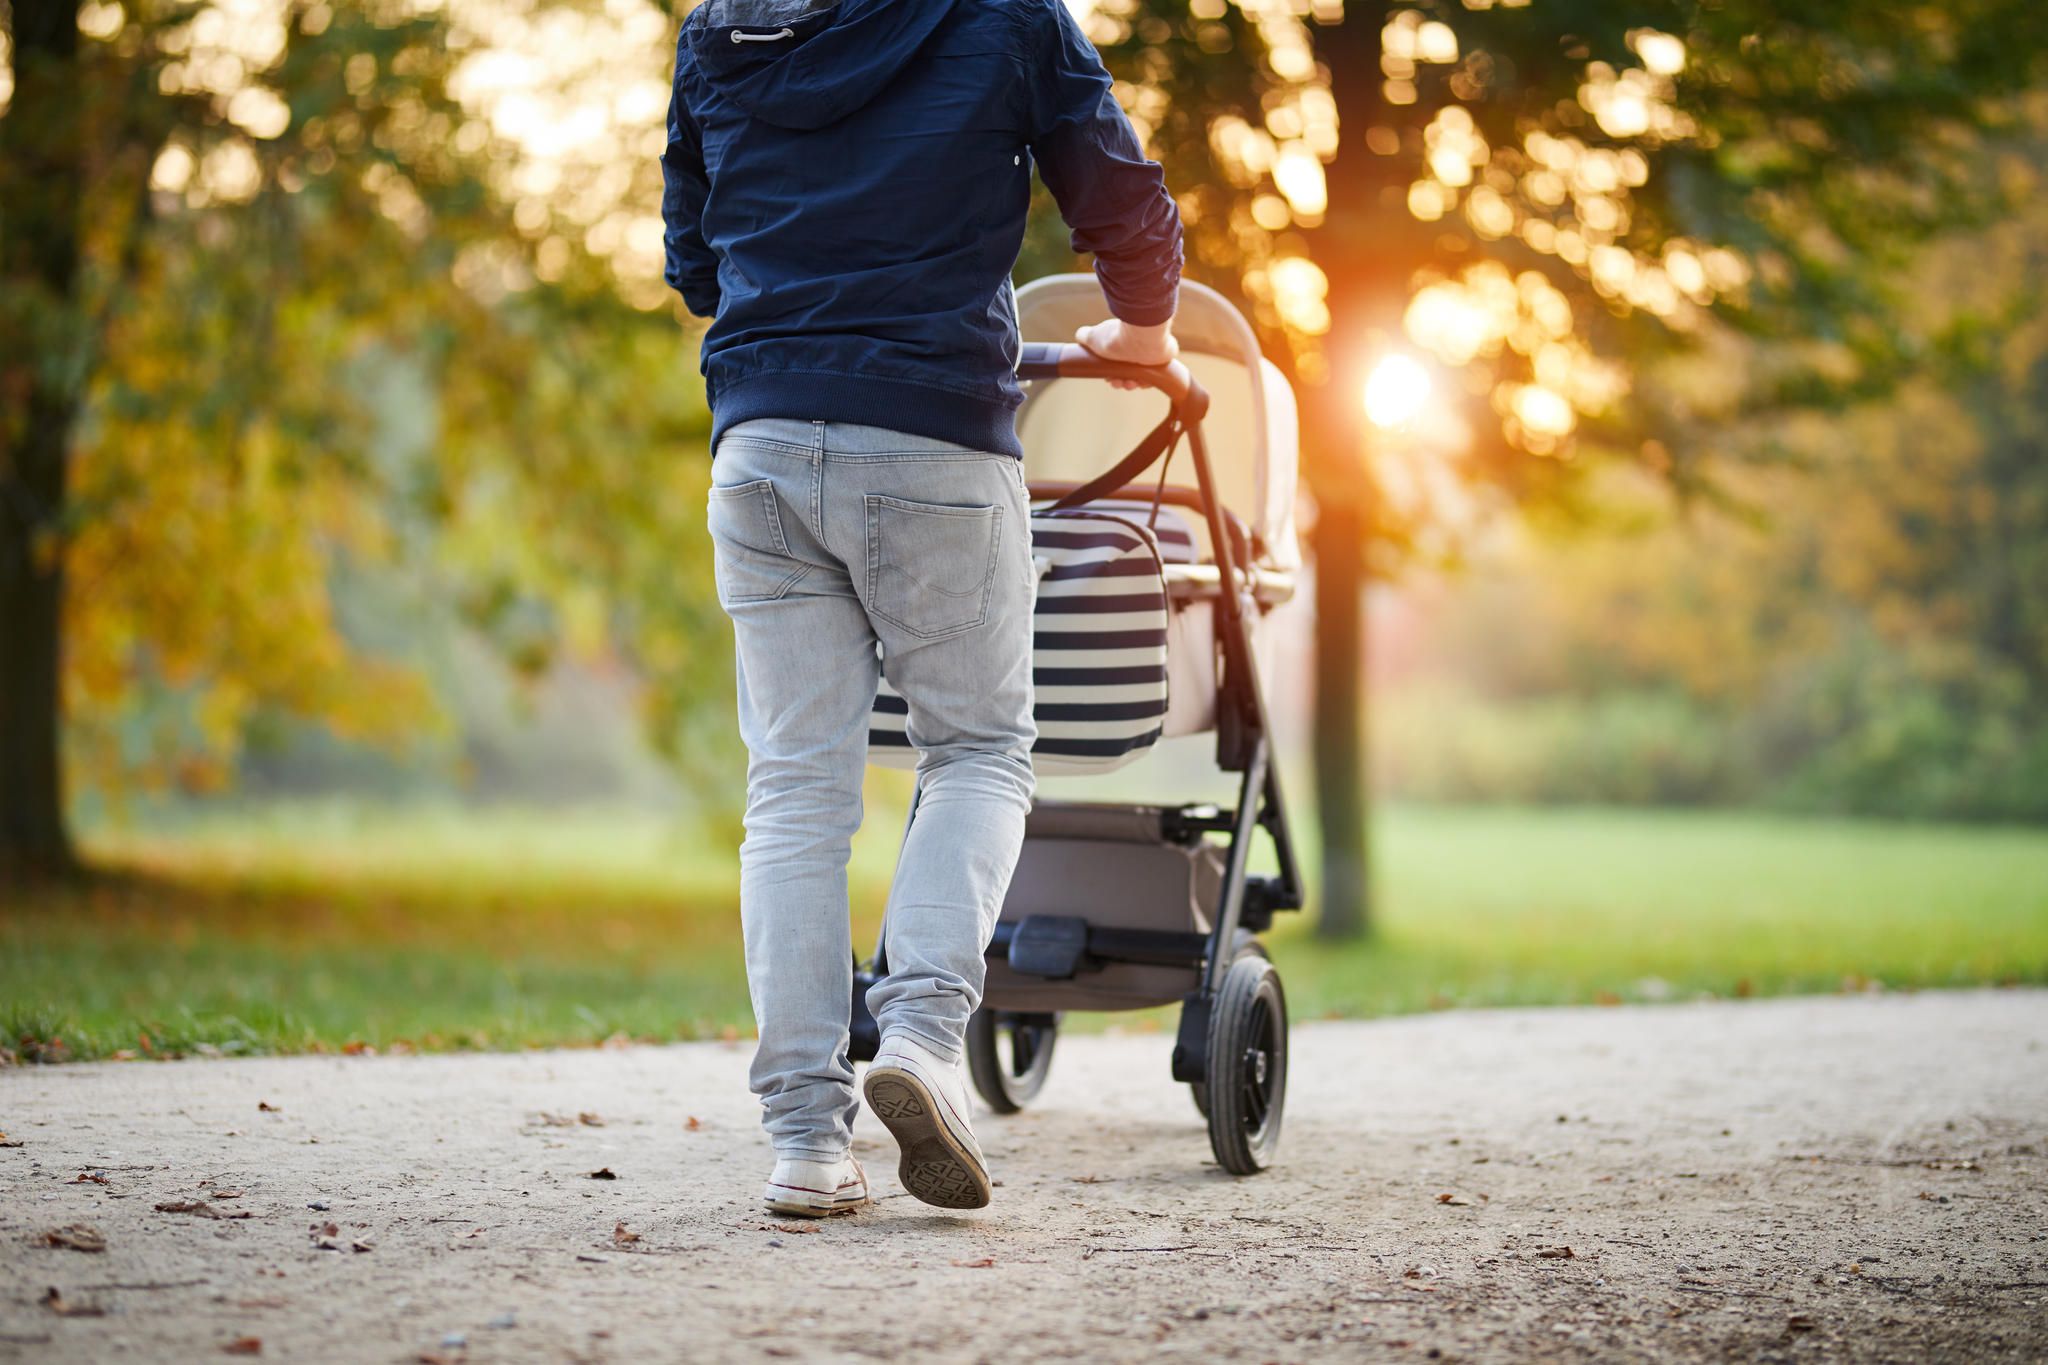 Väter-Fitness im Babyalltag: 8 Dinge, die Väter fit und Babys